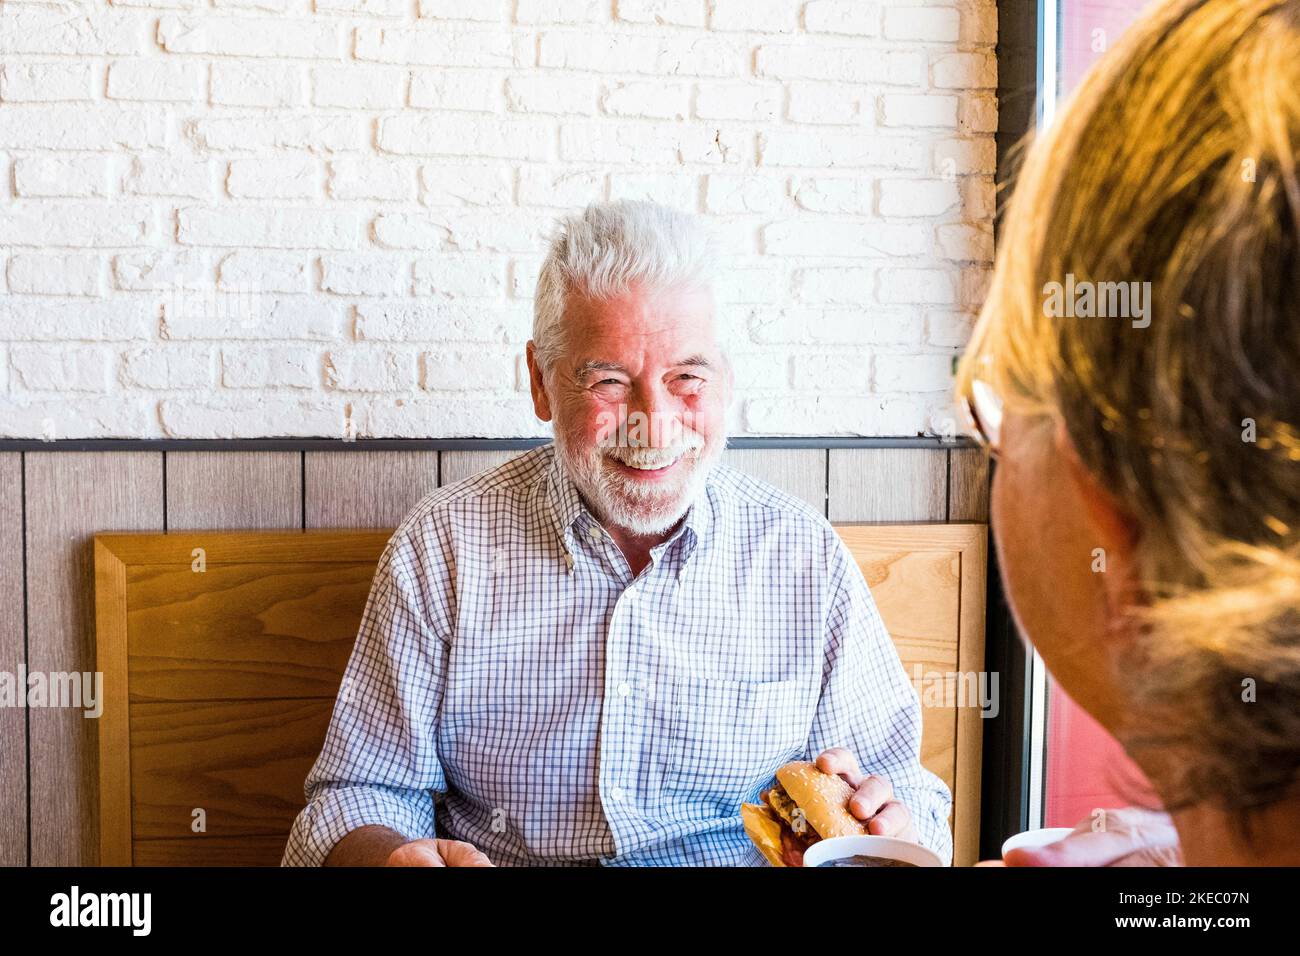 Ein paar von zwei Senioren essen und trinken in einem Restaurant Von Fast Food zusammen - reifer Mann hält einen Hamburger Und bereit, es zu essen, Blick auf seine Frau Stockfoto